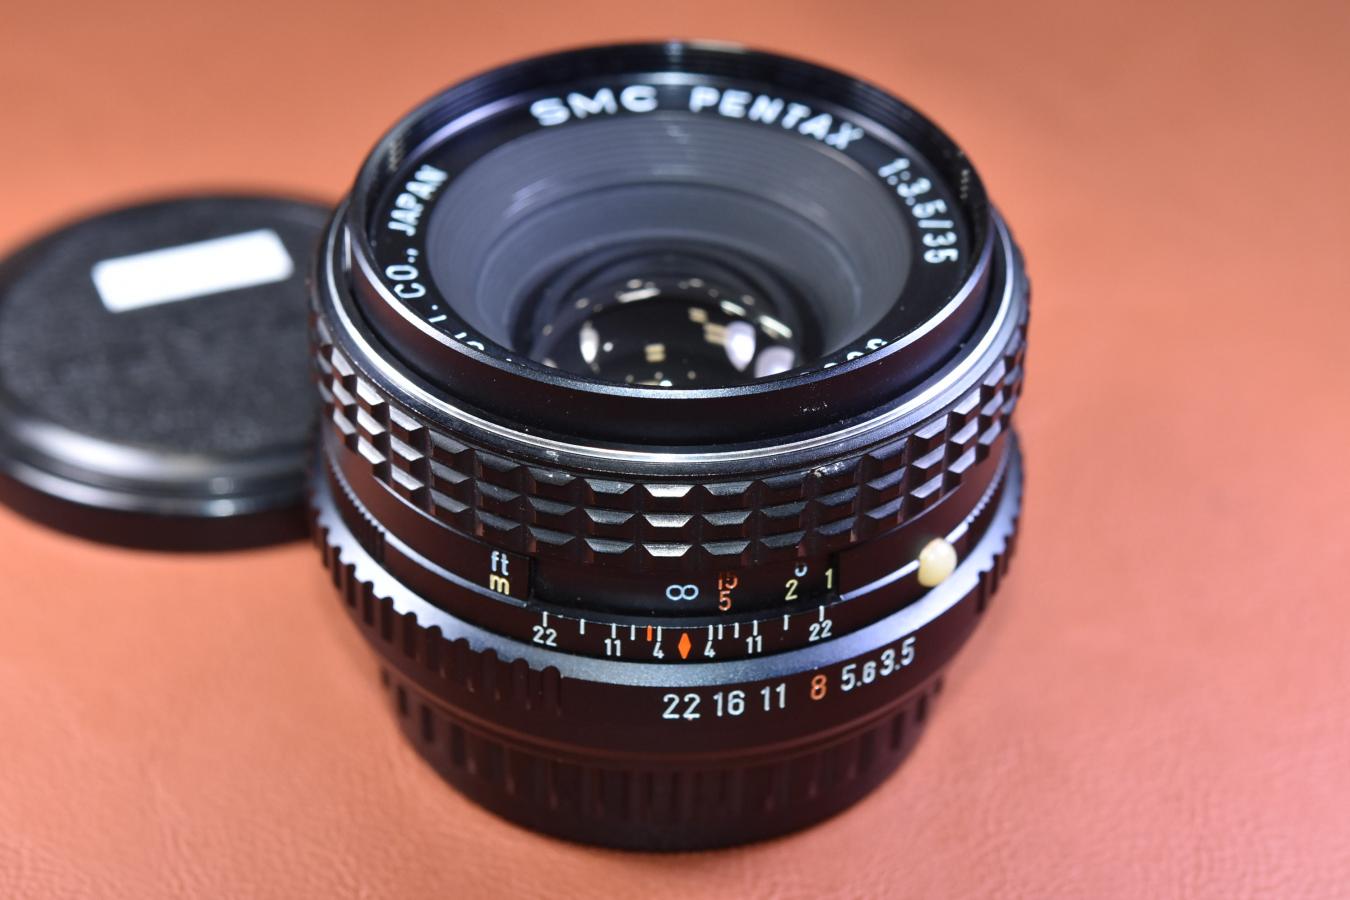 SMC PENTAX 35mm F3.5